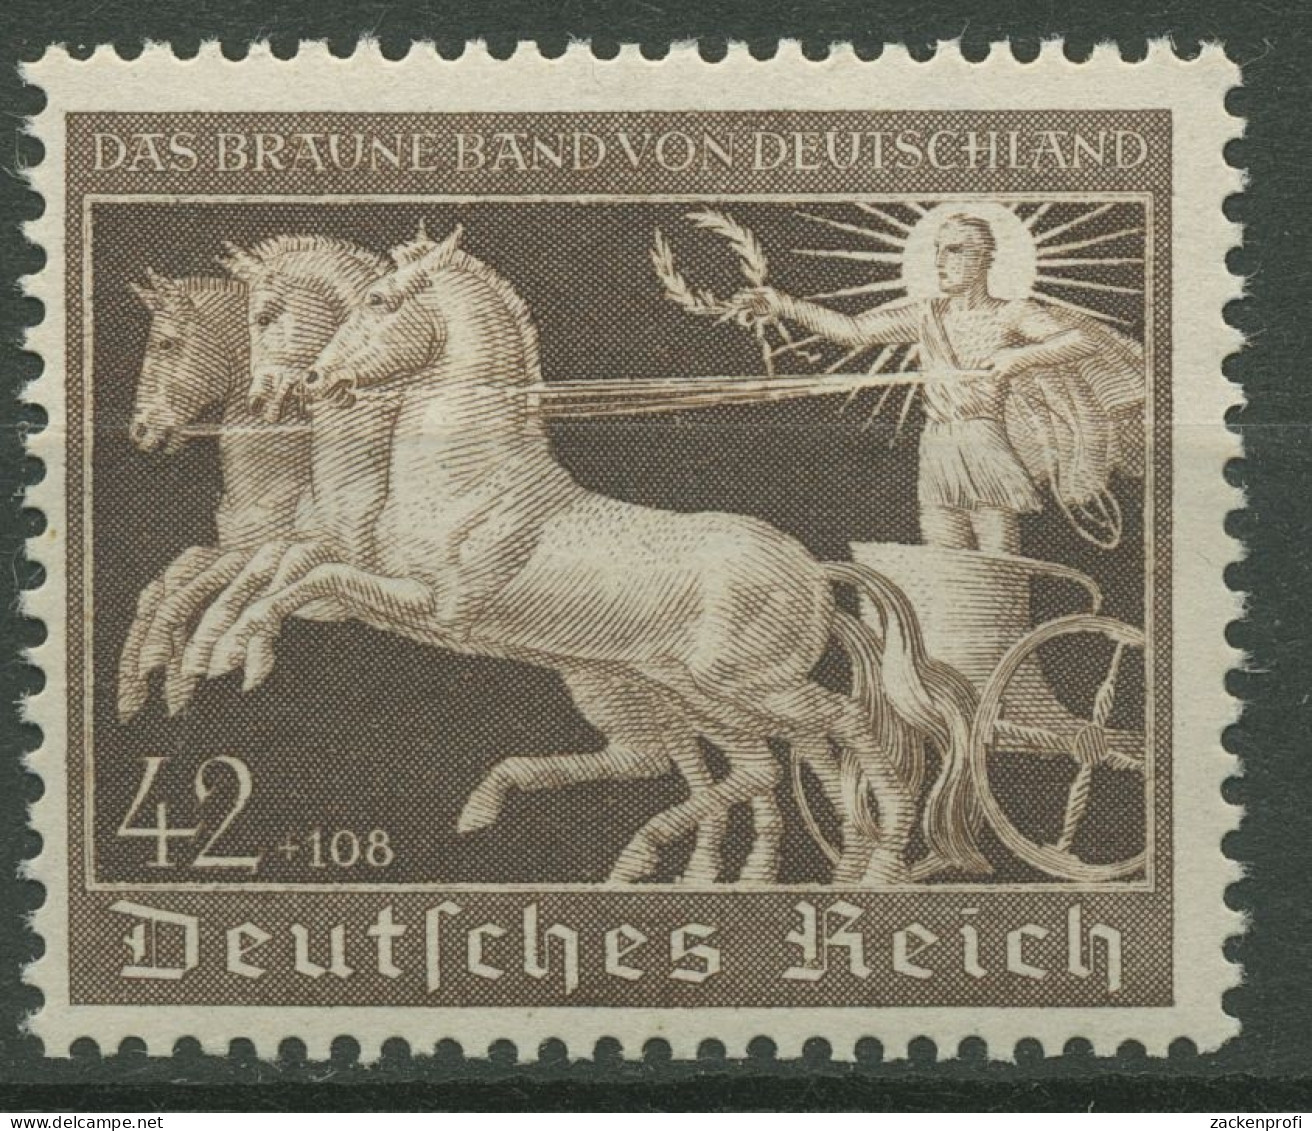 Deutsches Reich 1940 Galopprennen Das Braune Band 747 Postfrisch Geprüft - Unused Stamps